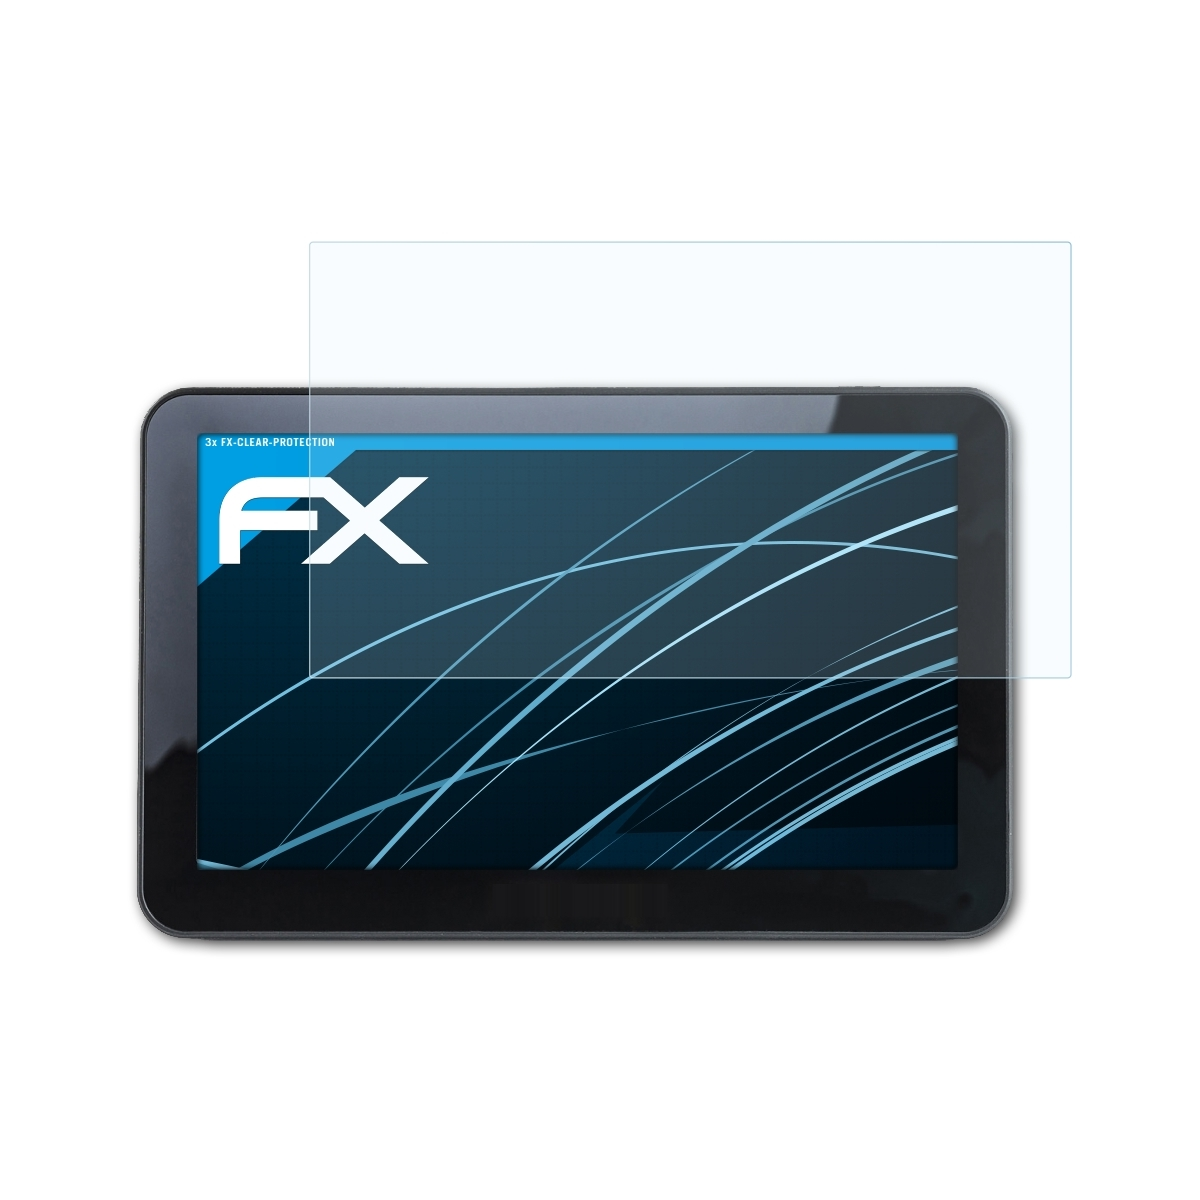 Snooper ATFOLIX 3x S6800) Displayschutz(für FX-Clear